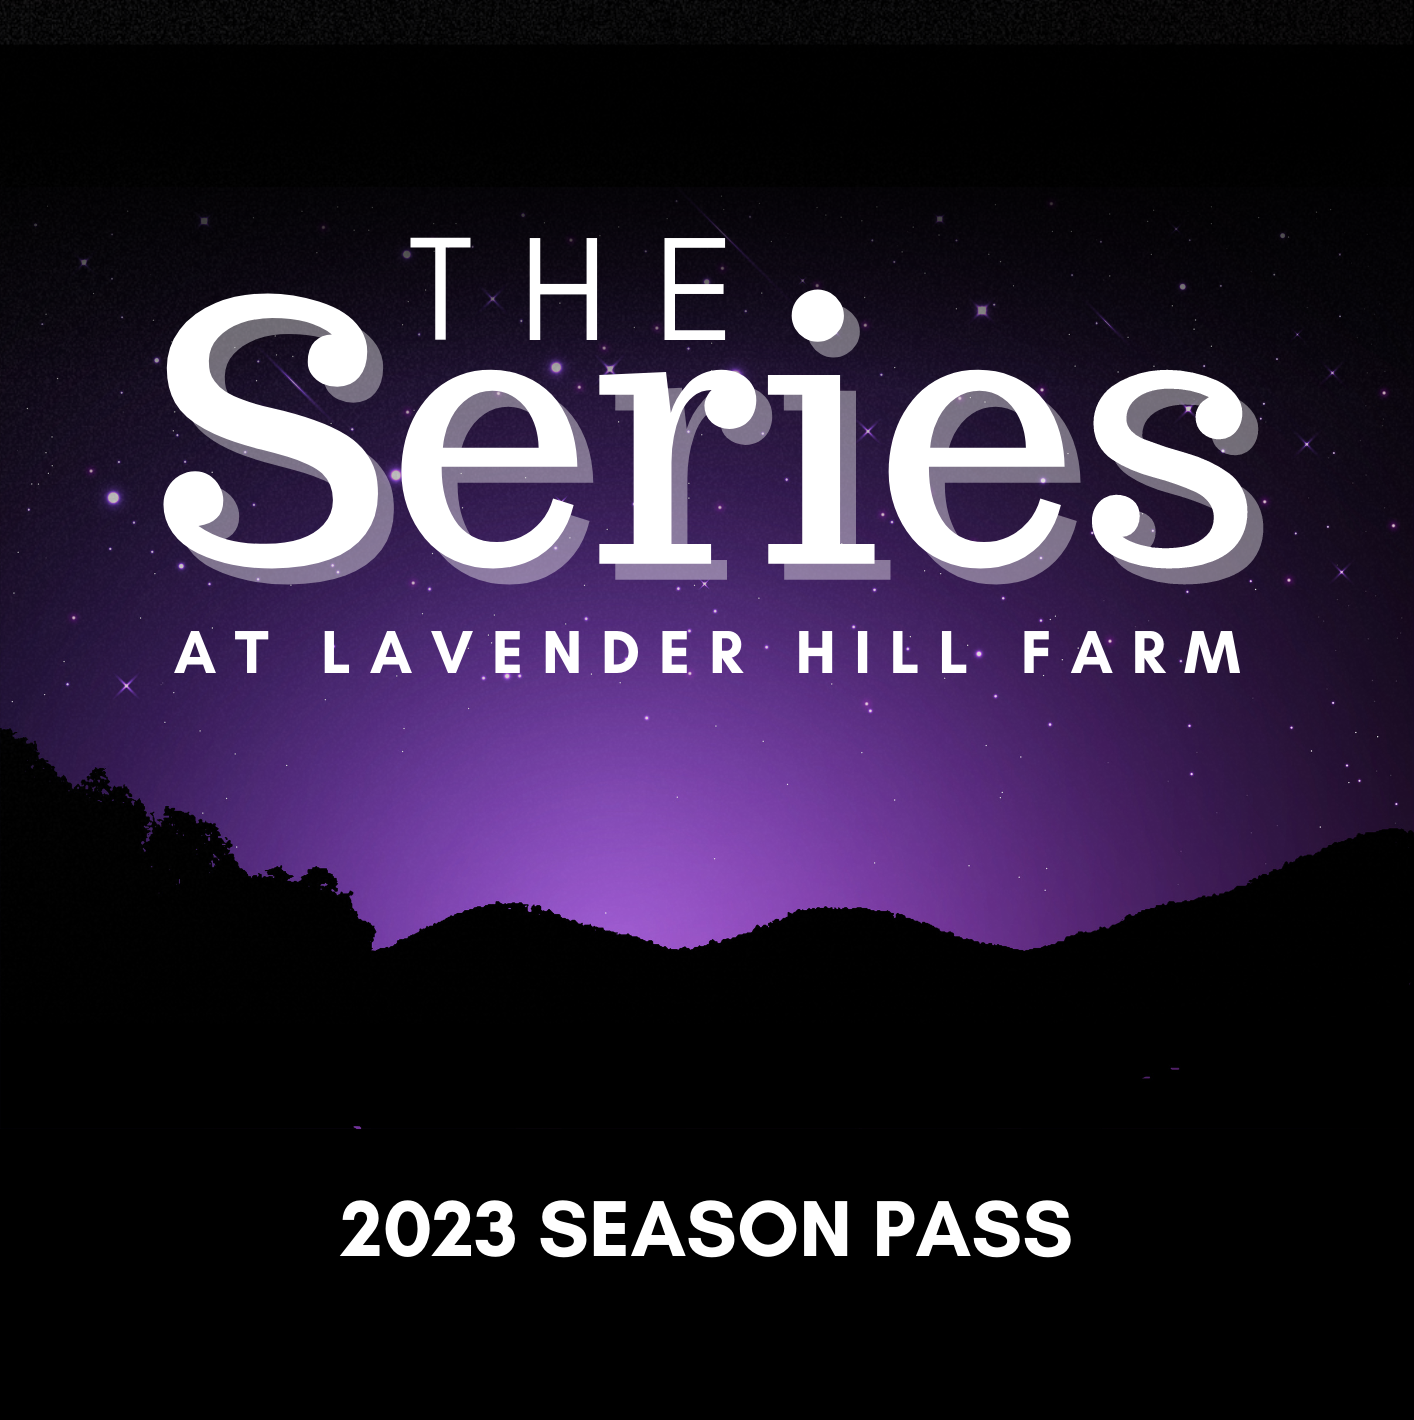 The Series at Lavender Hill Farm 2023 Season Pass